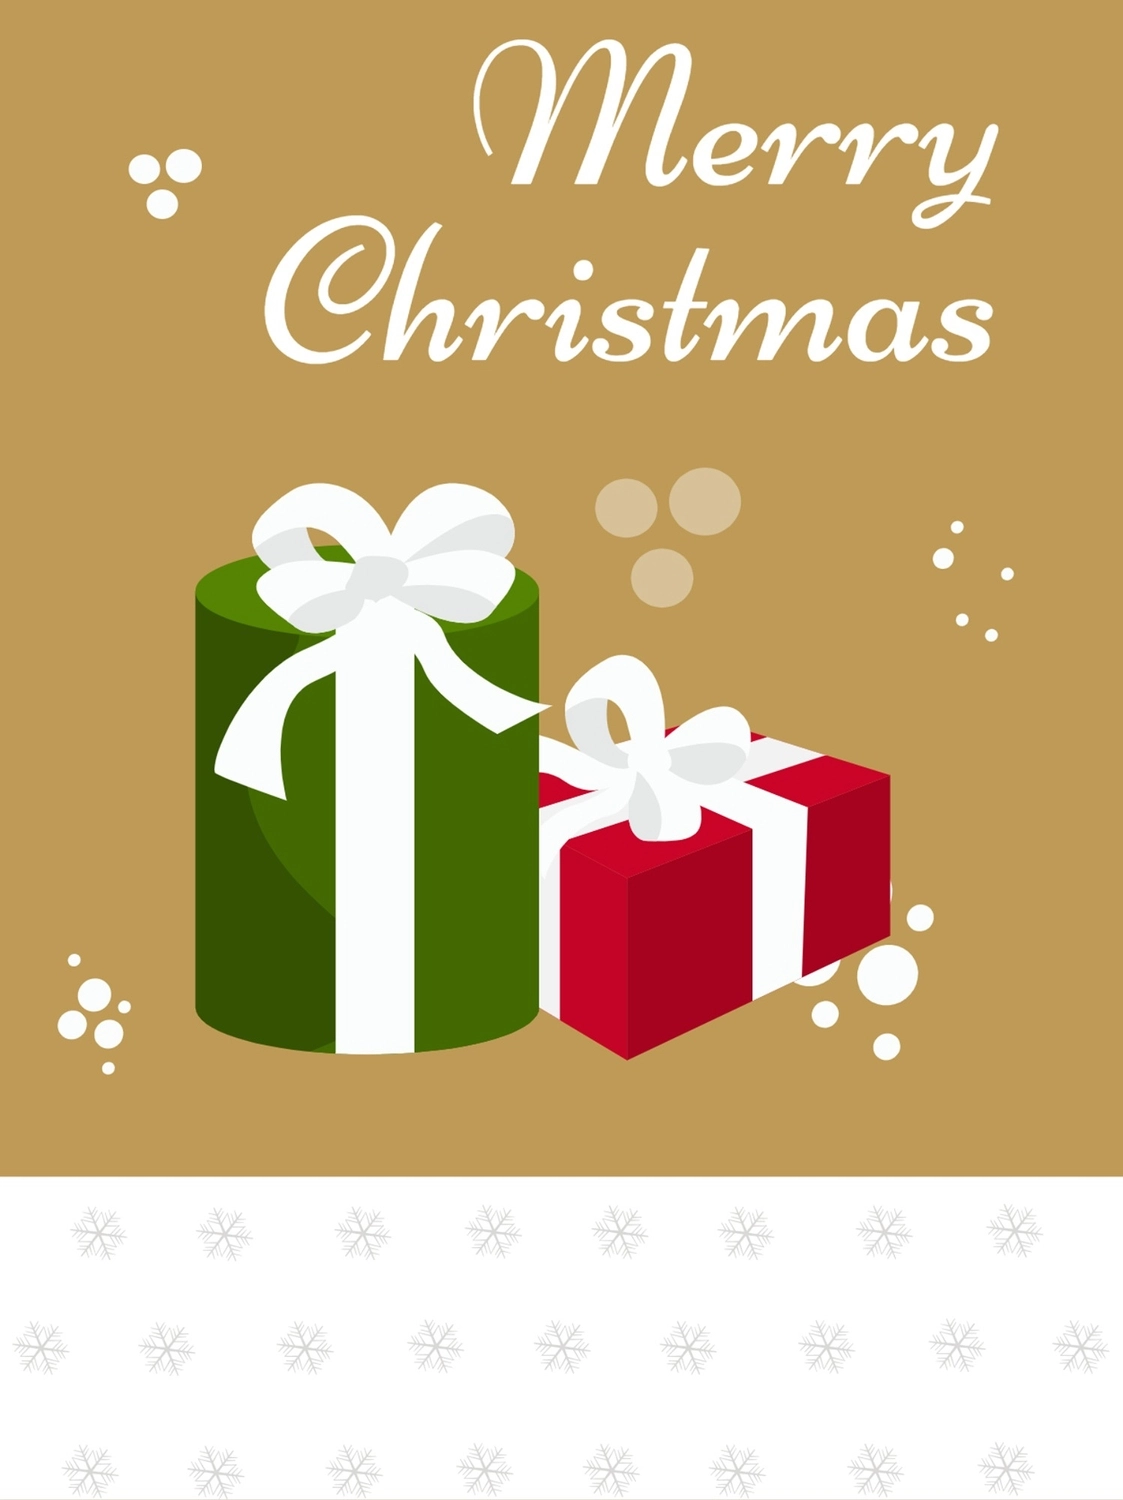 リボンのかかったクリスマスプレゼント, かわいい, クリスマスカード, リボン, メッセージカードテンプレート